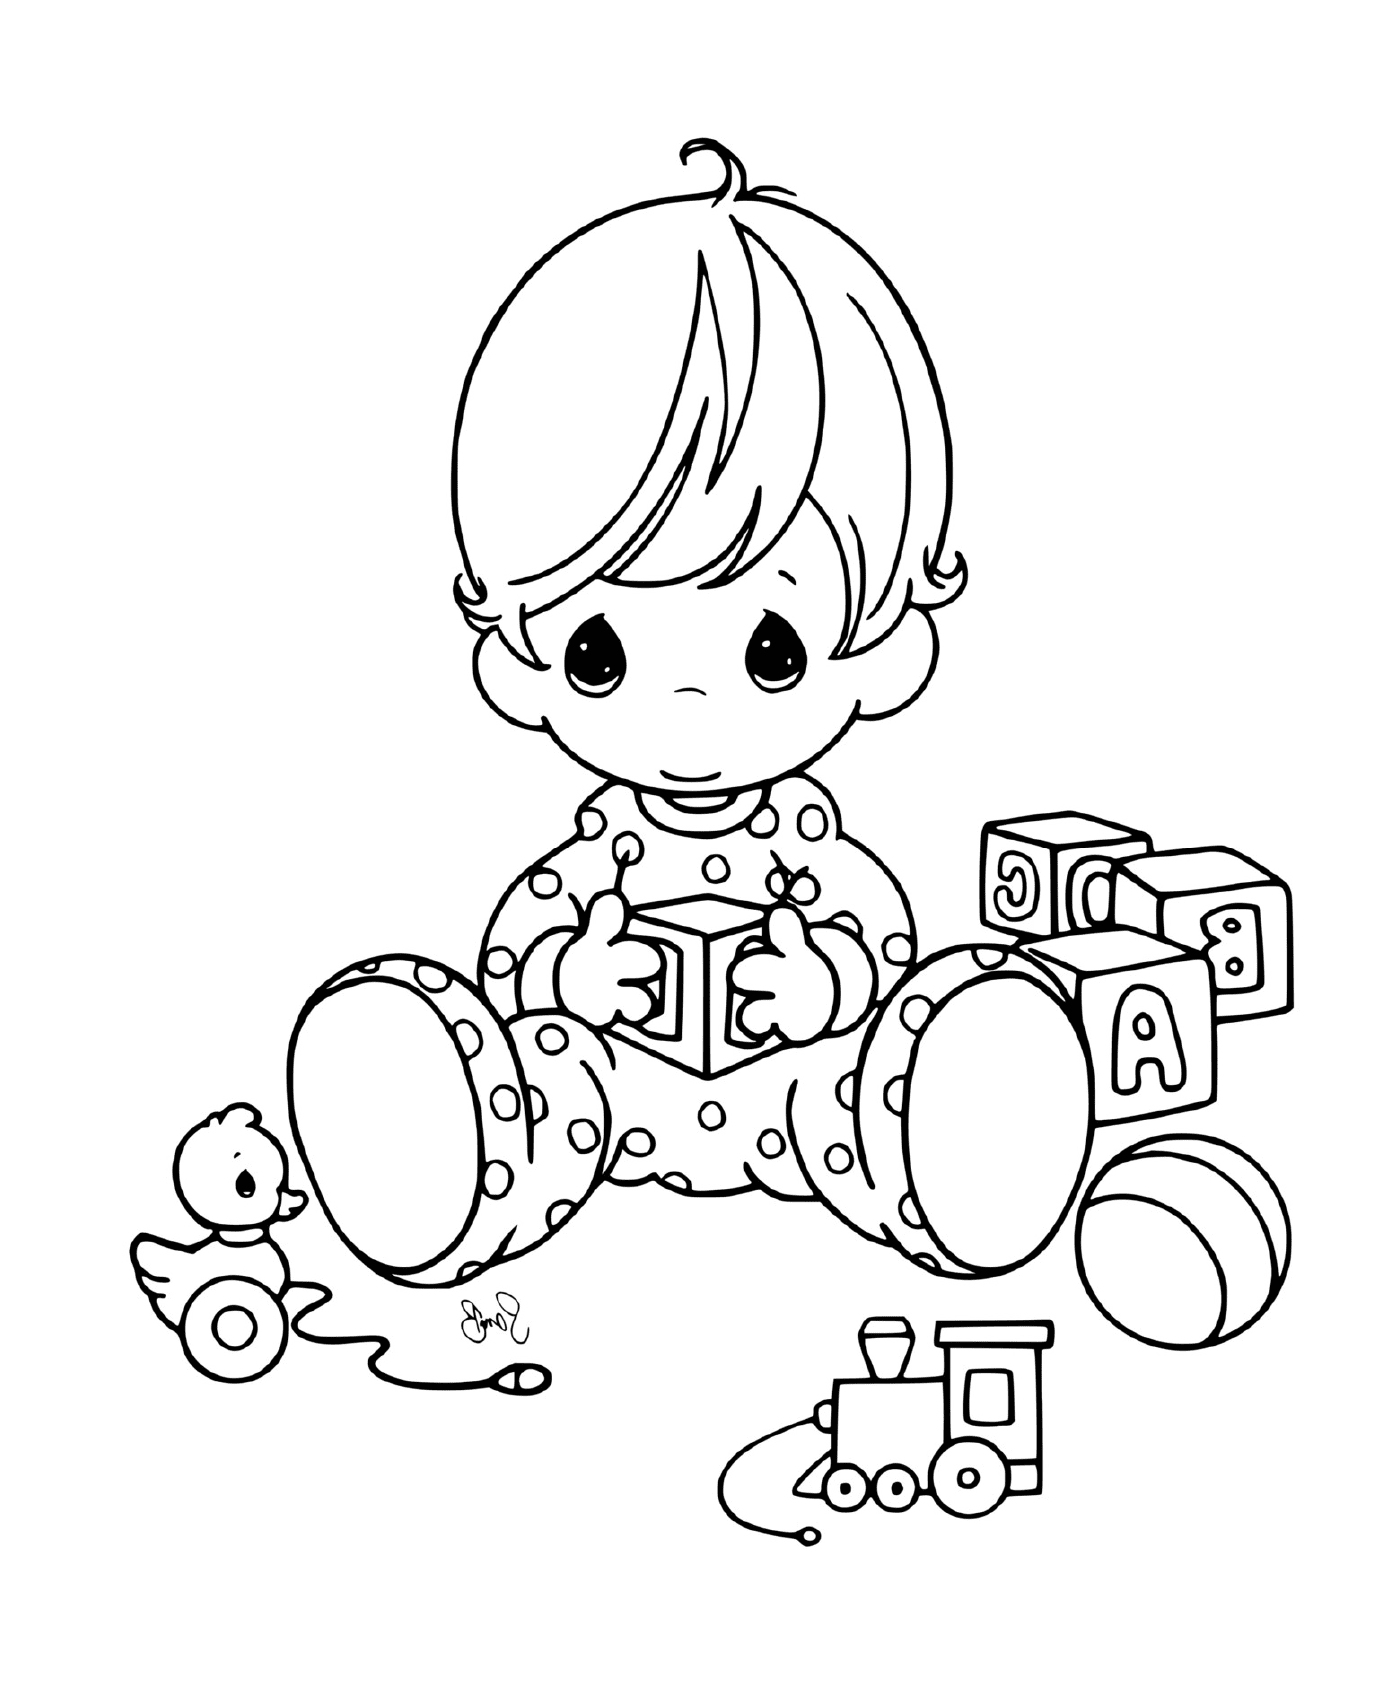  Ребёнок со своими игрушками 